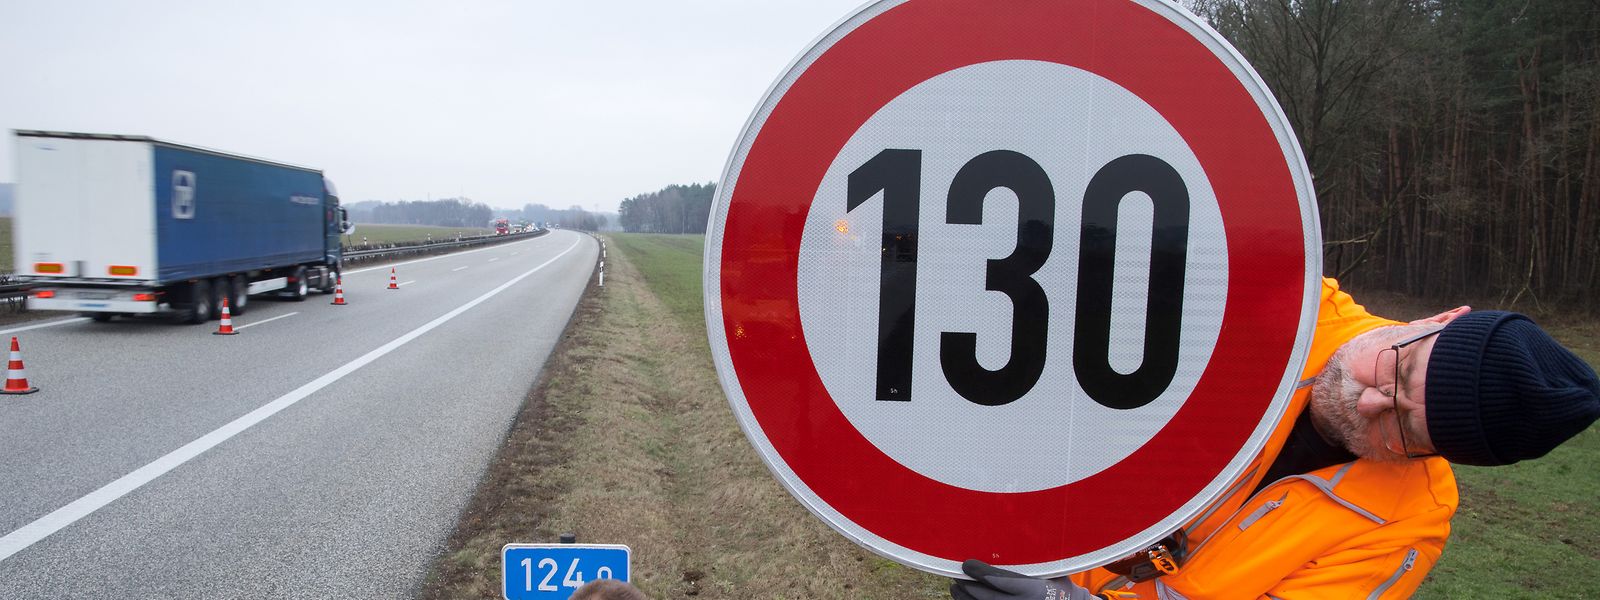 Die deutsche sozialdemokratische Partei SPD hat ein generelles Tempolimit von 130 Kilometern pro Stunde als eines der Themen für zusätzliche Vorhaben benannt.